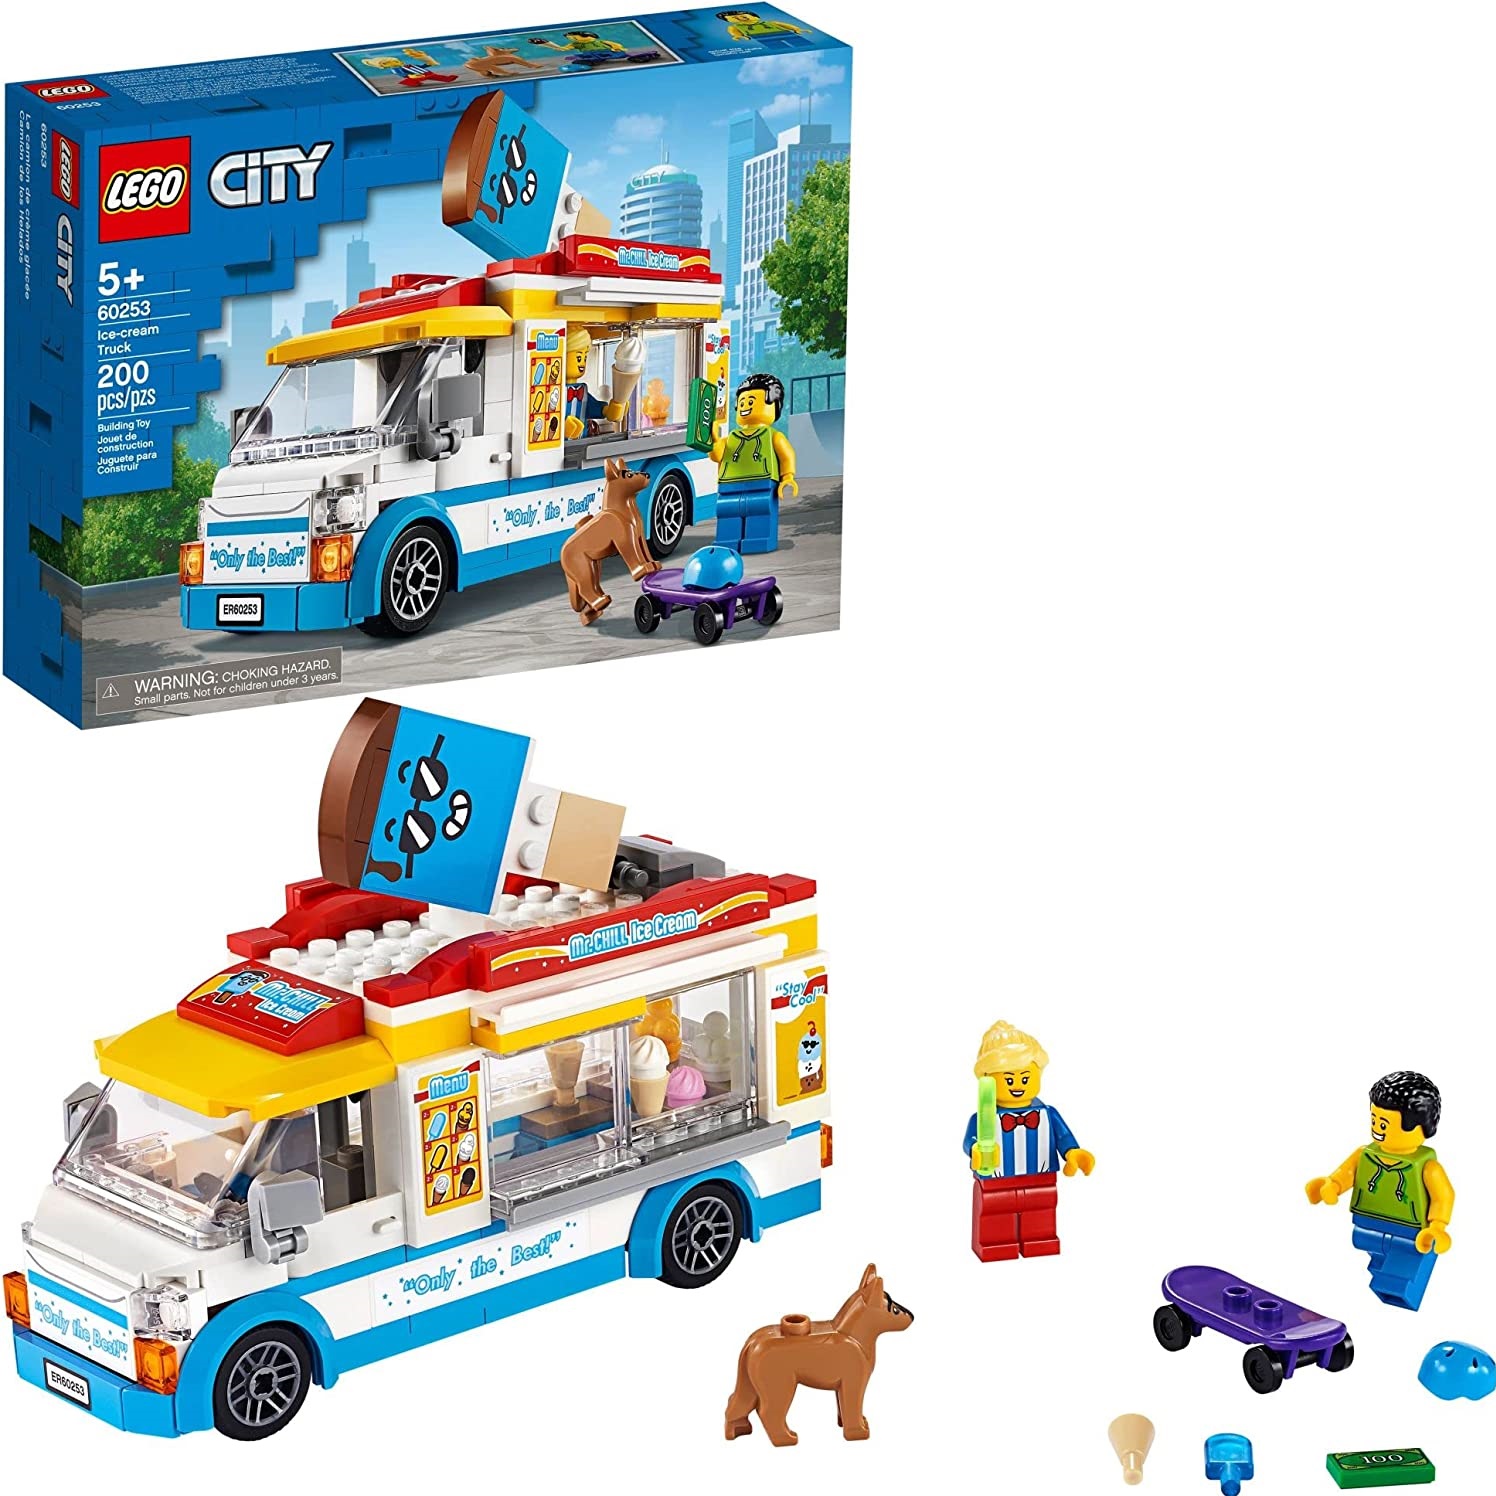 LEGO City 60253 -  